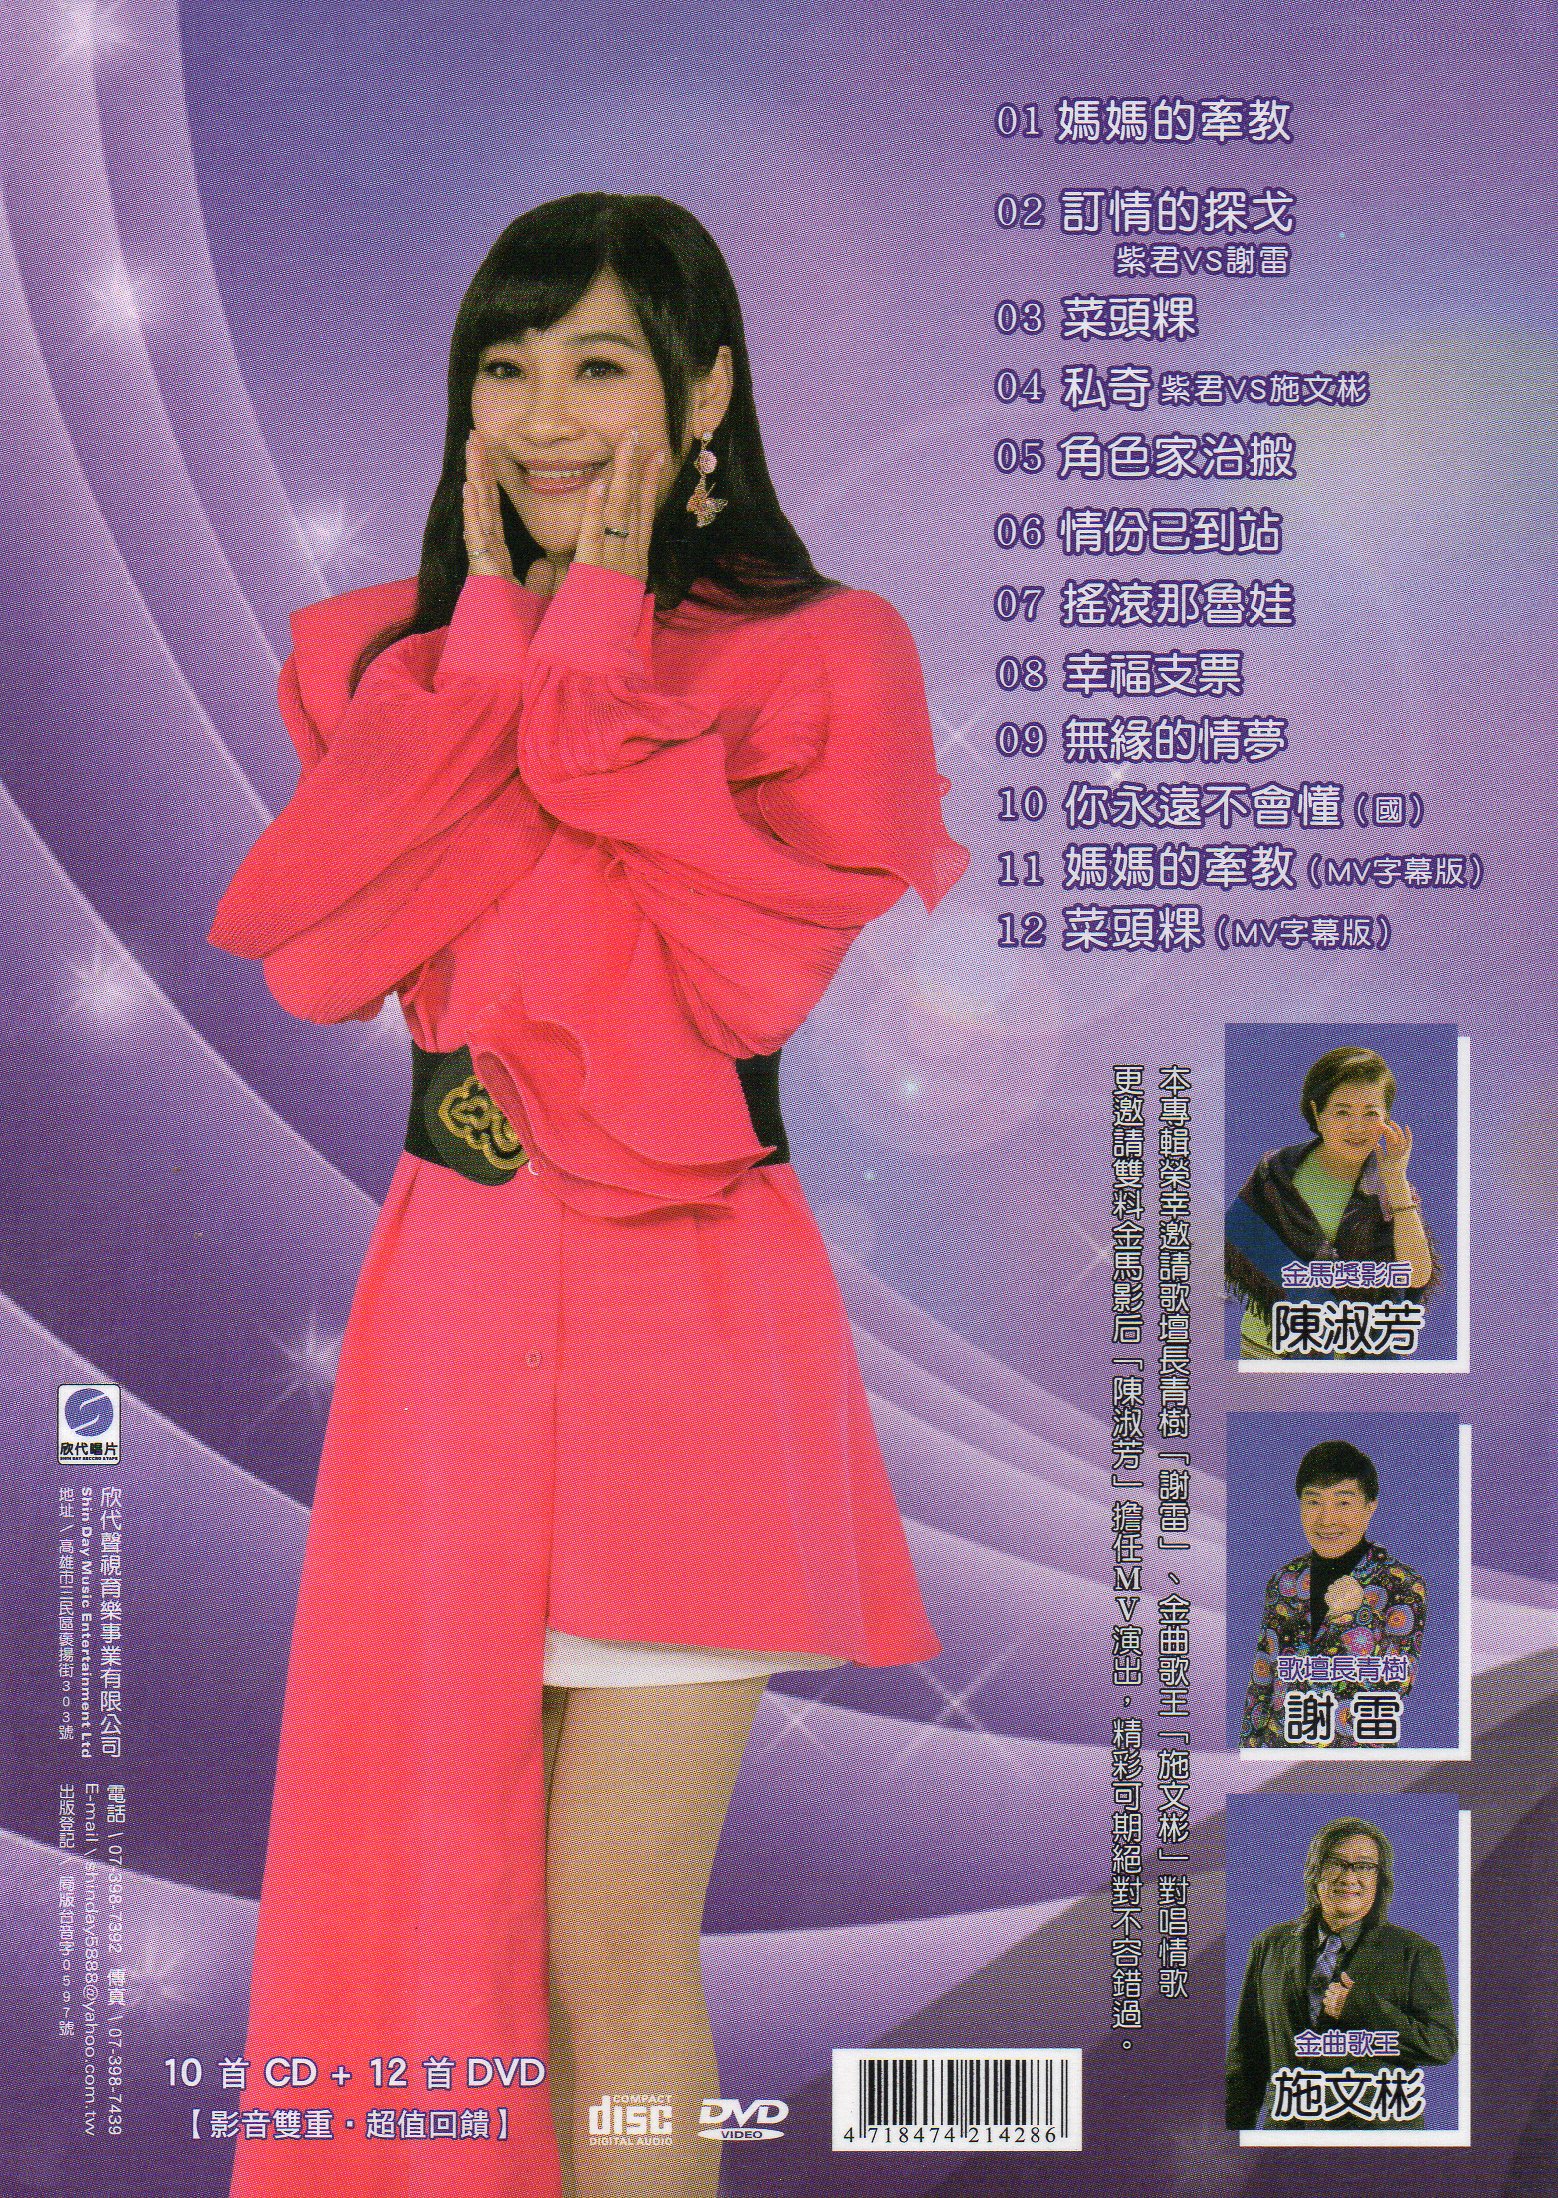 紫君-媽媽的牽教DVD(欣代)(mega) MI1619673448